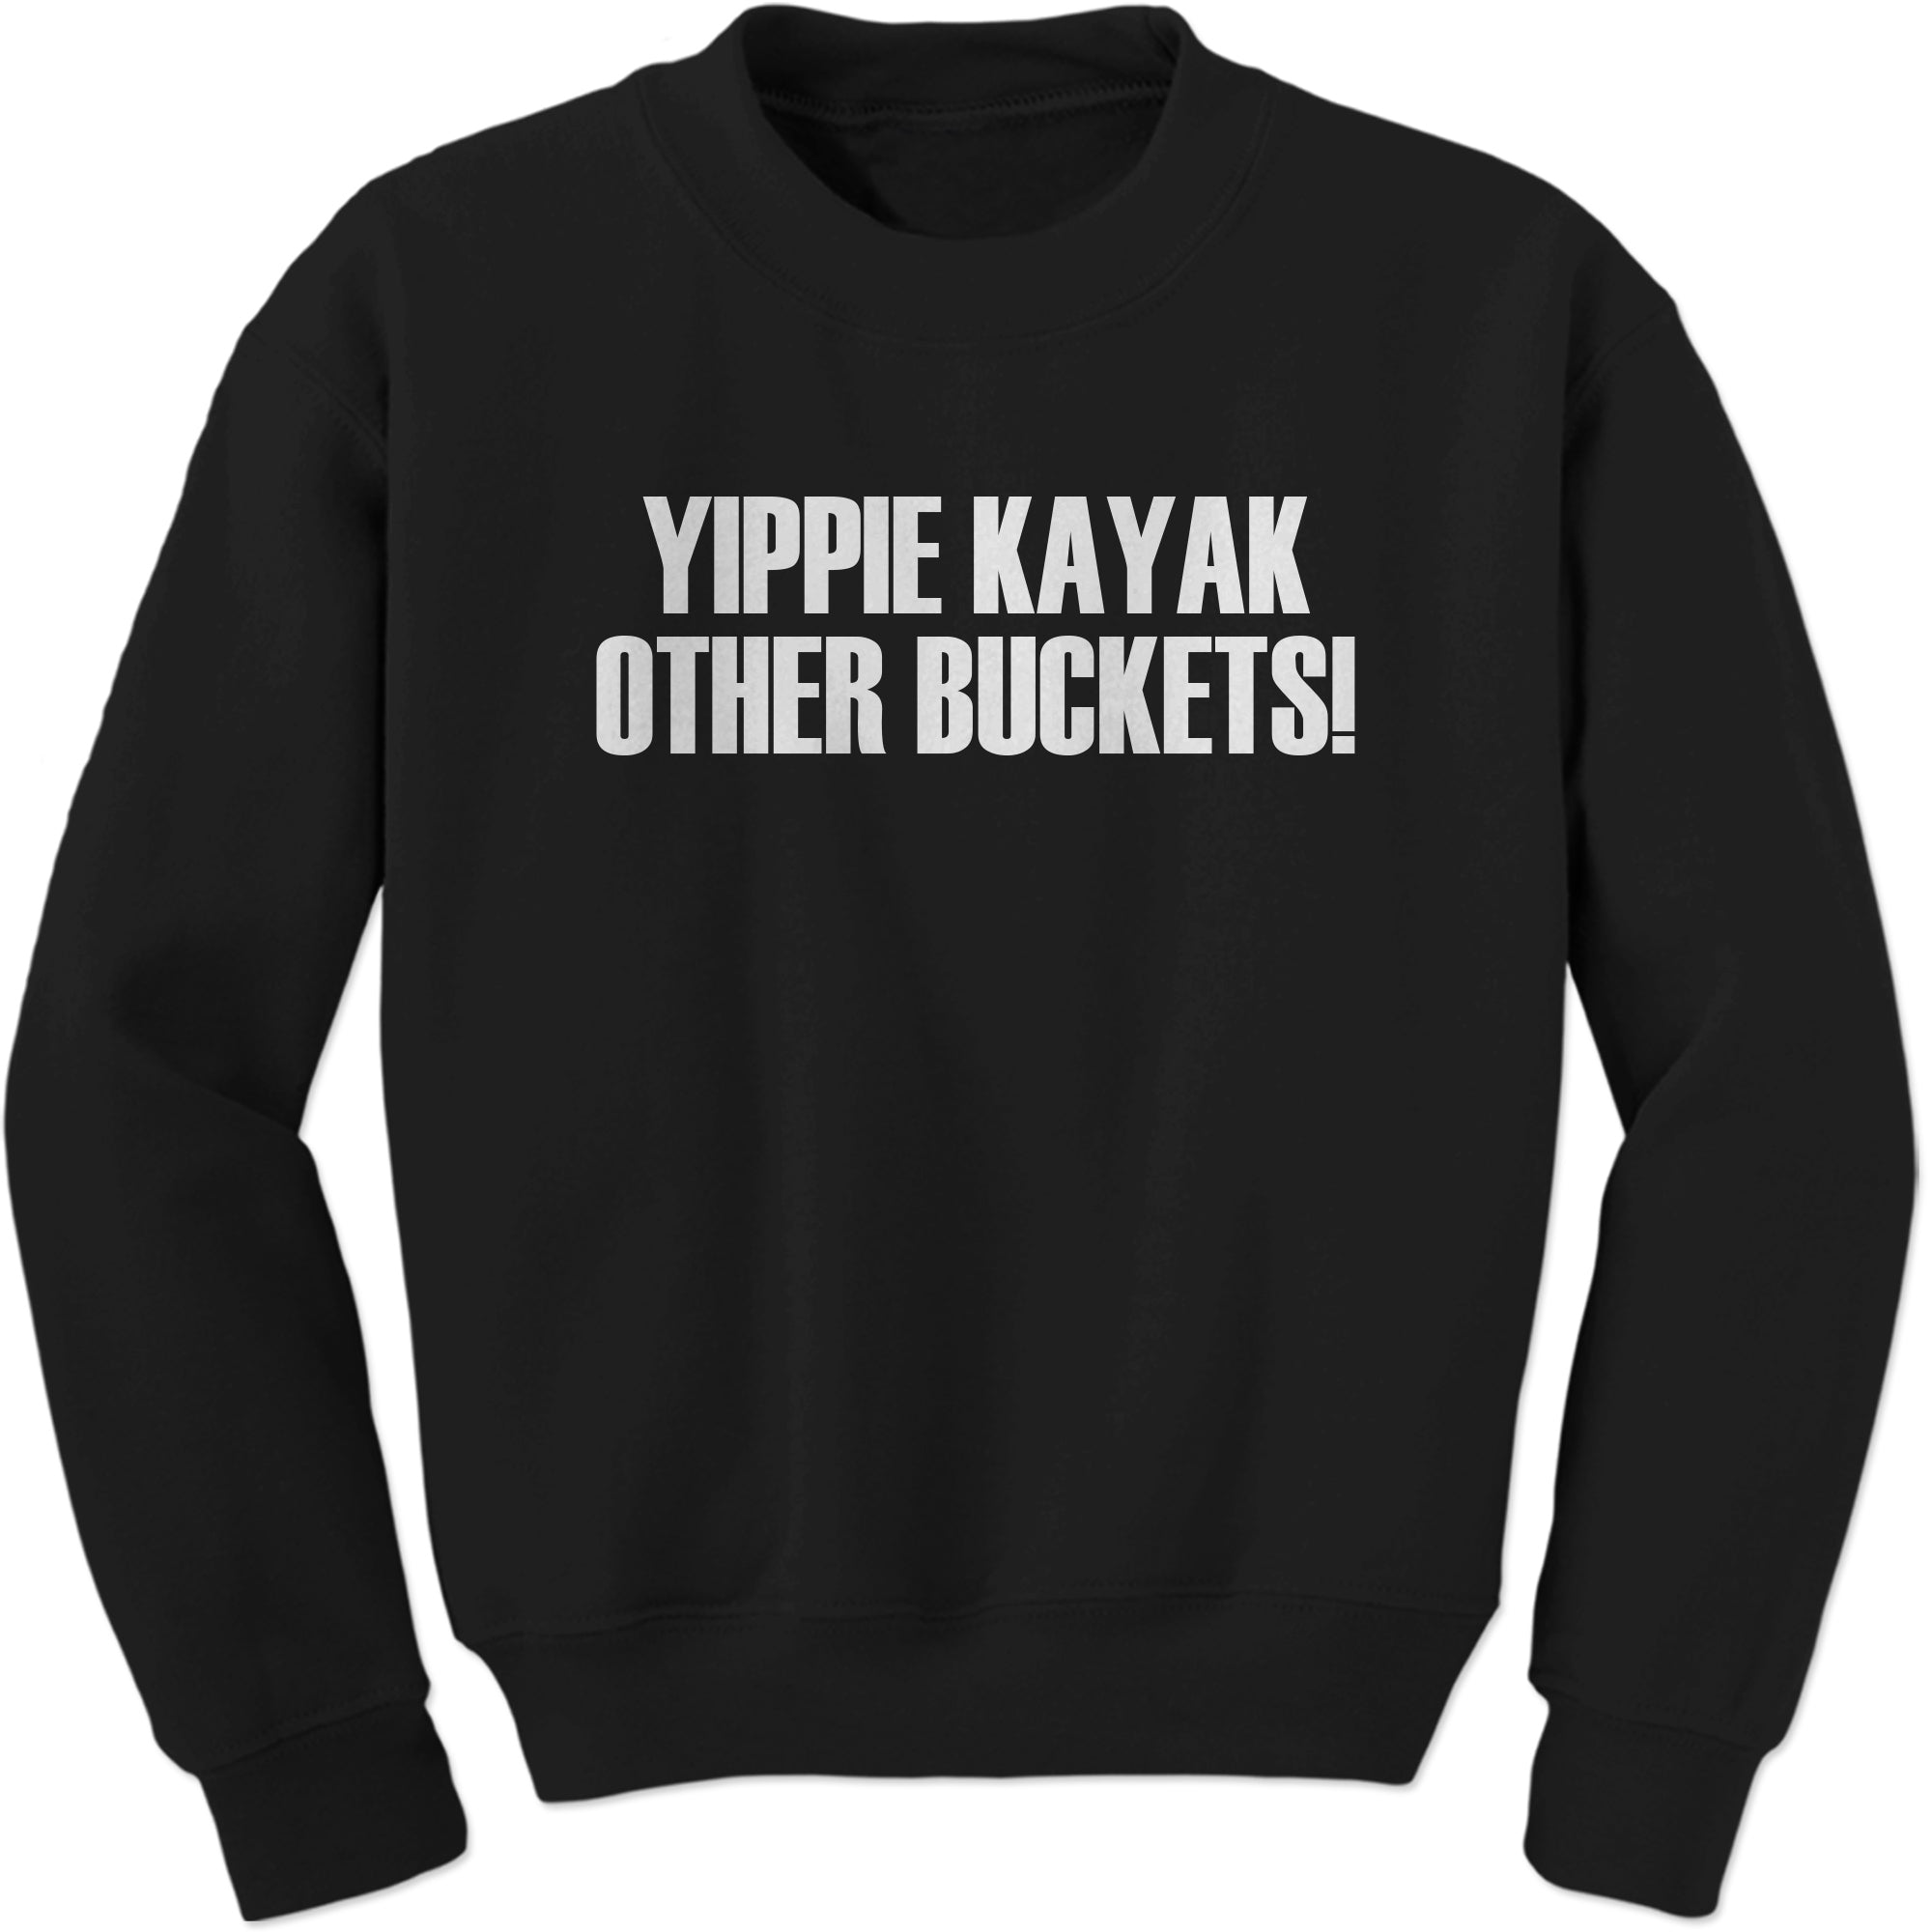 Yippie Kayak Other Buckets Brooklyn 99 Sweatshirt